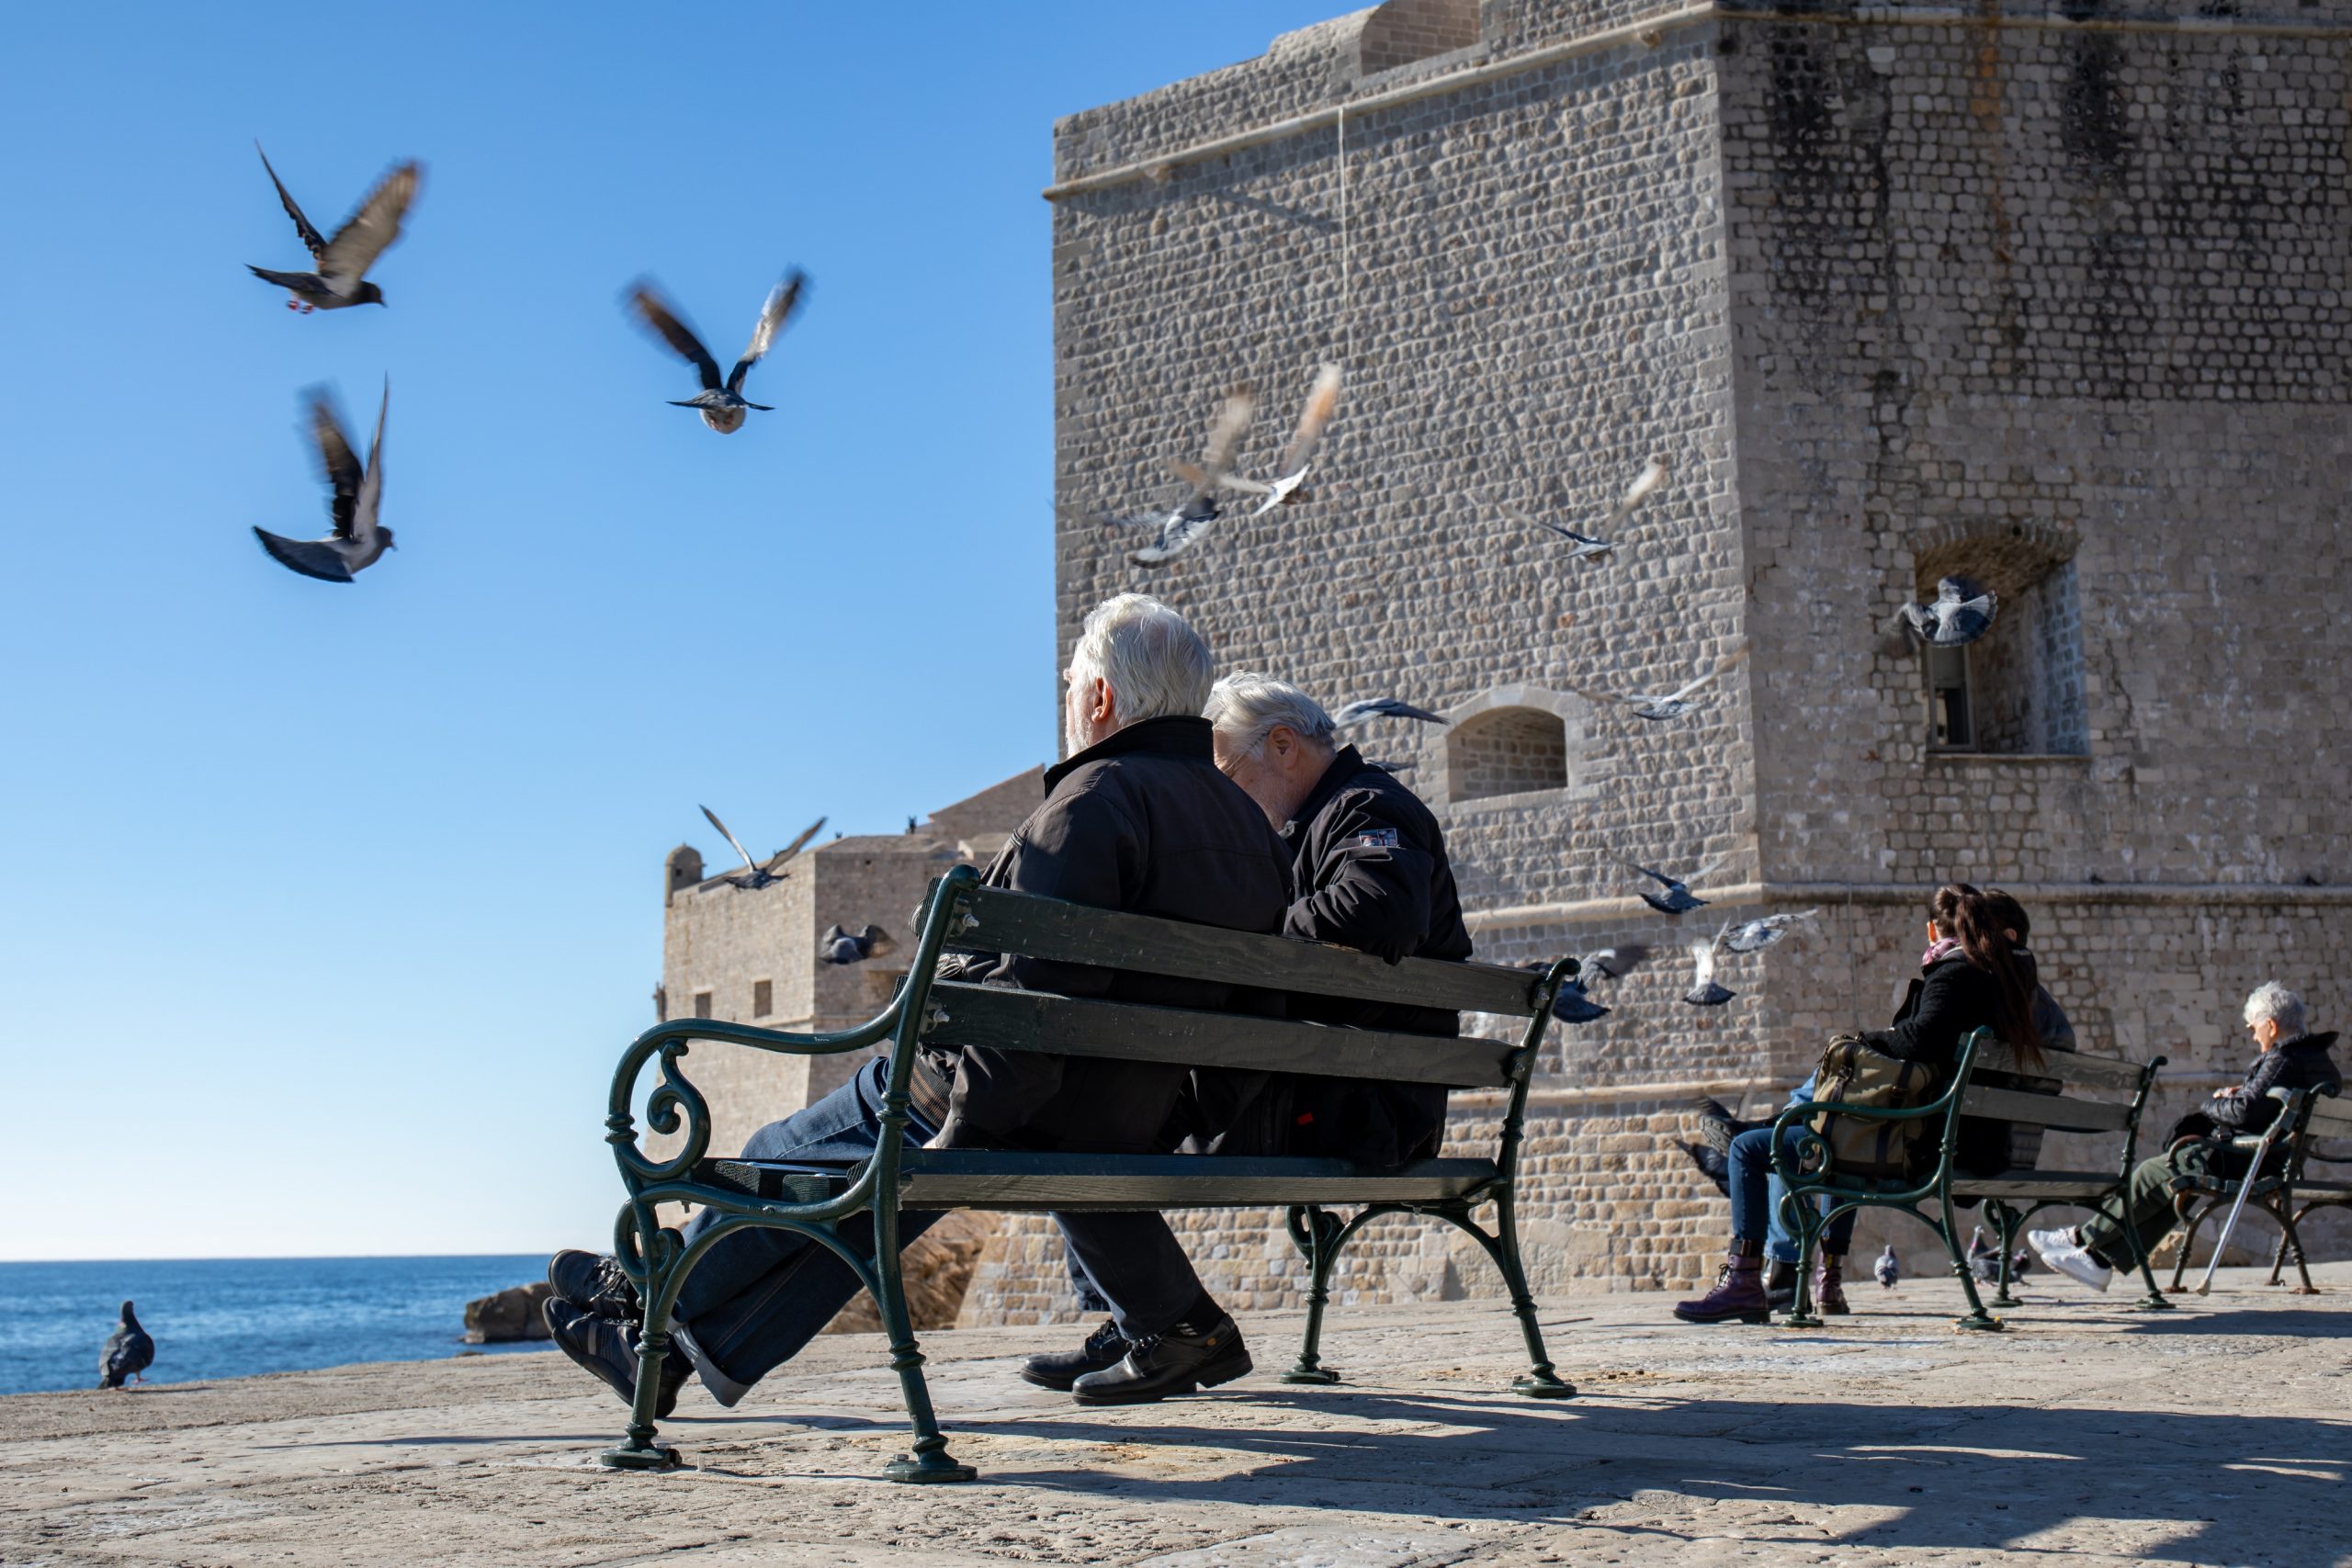 16.01.2020., Stara gradska jezgra, Dubrovnik - Gradski kadrovi. Zivot unutar gradske jezgre.
Photo: Grgo Jelavic/PIXSELL